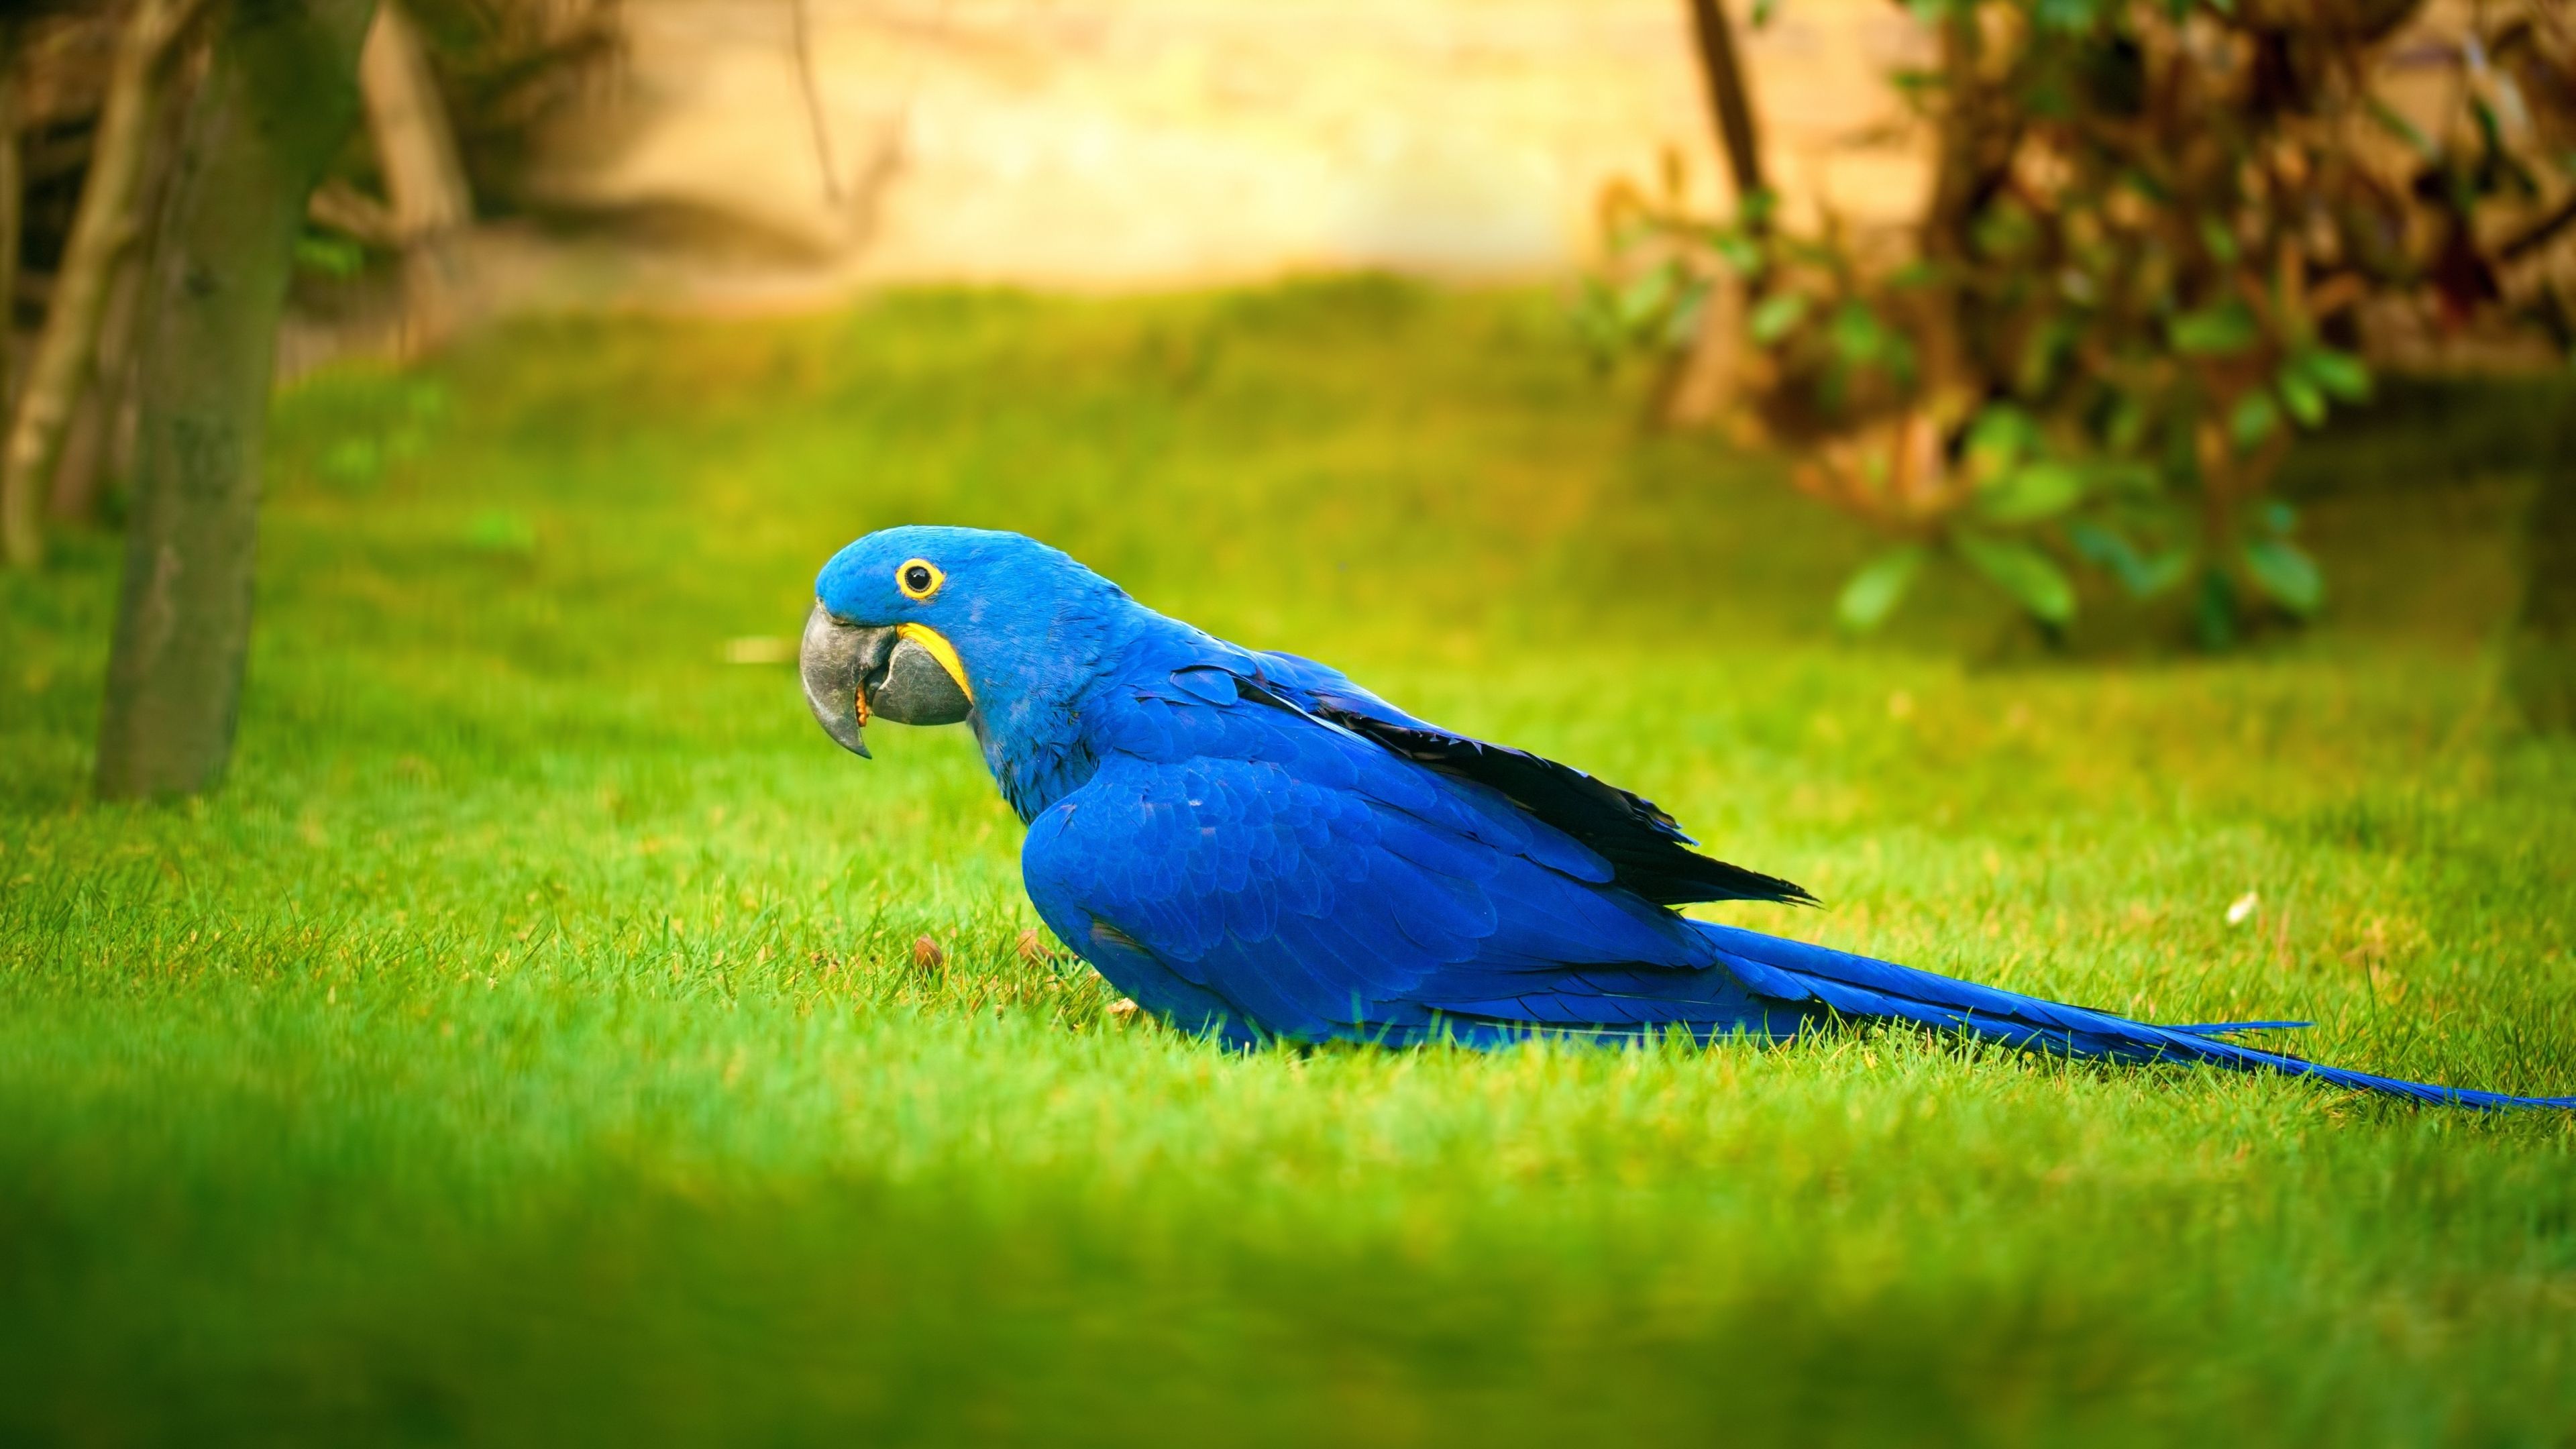 Download 3840x2160 wallpaper macaw, bird, grass, parrot, 4k, uhd 16: widescreen, 3840x2160 HD image, background, 2471